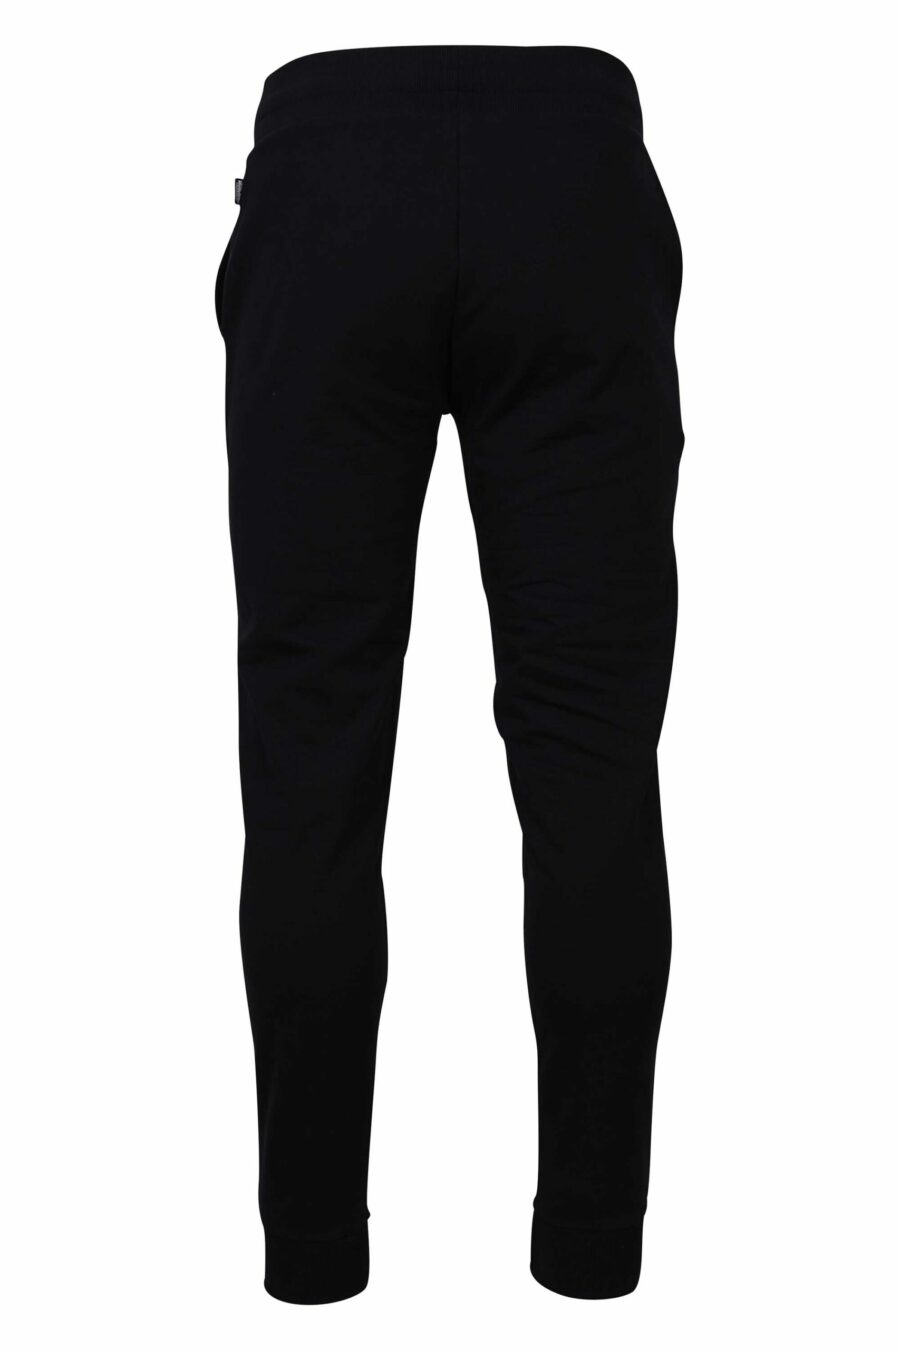 Pantalón de chándal negro con logo oso "underbear" en parche - 667113019949 2 scaled